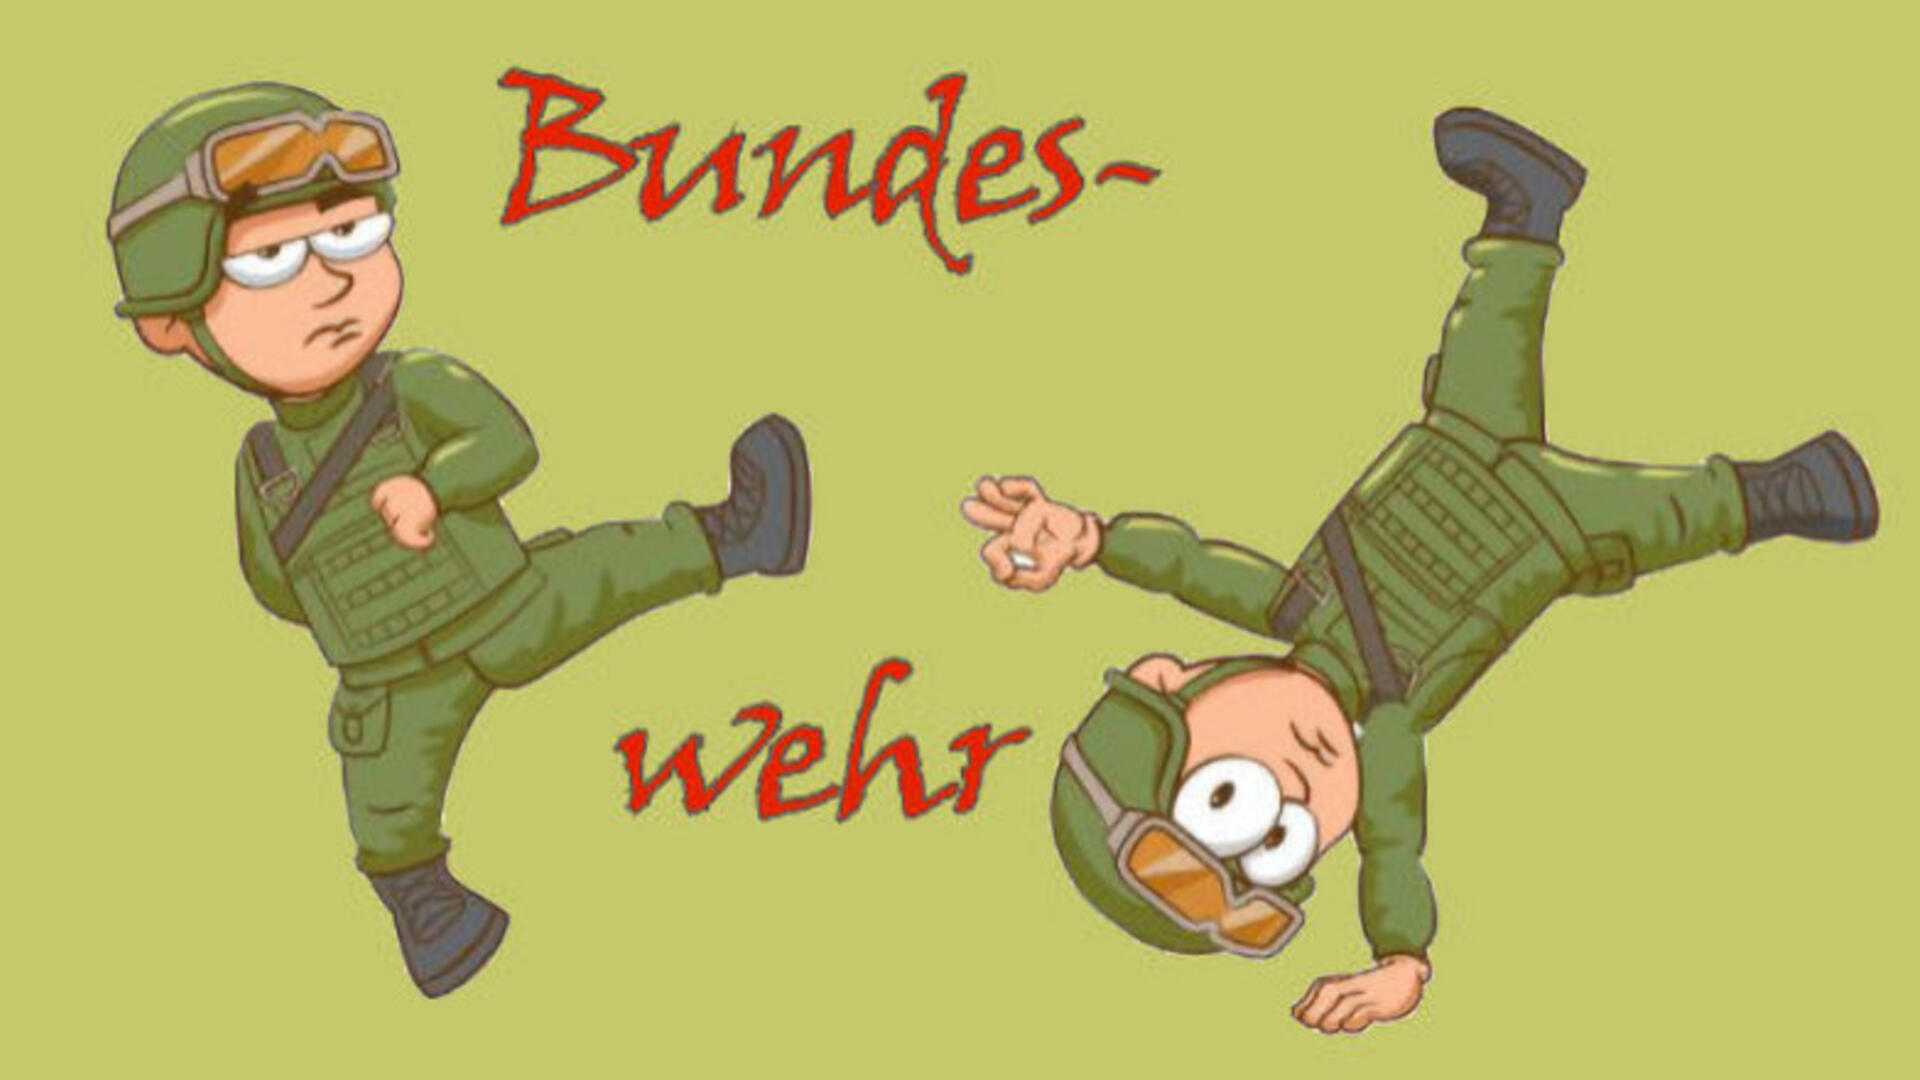 Tekening van soldaatjes die een soldaatje wegtrappen, tekst "Bundeswehr"